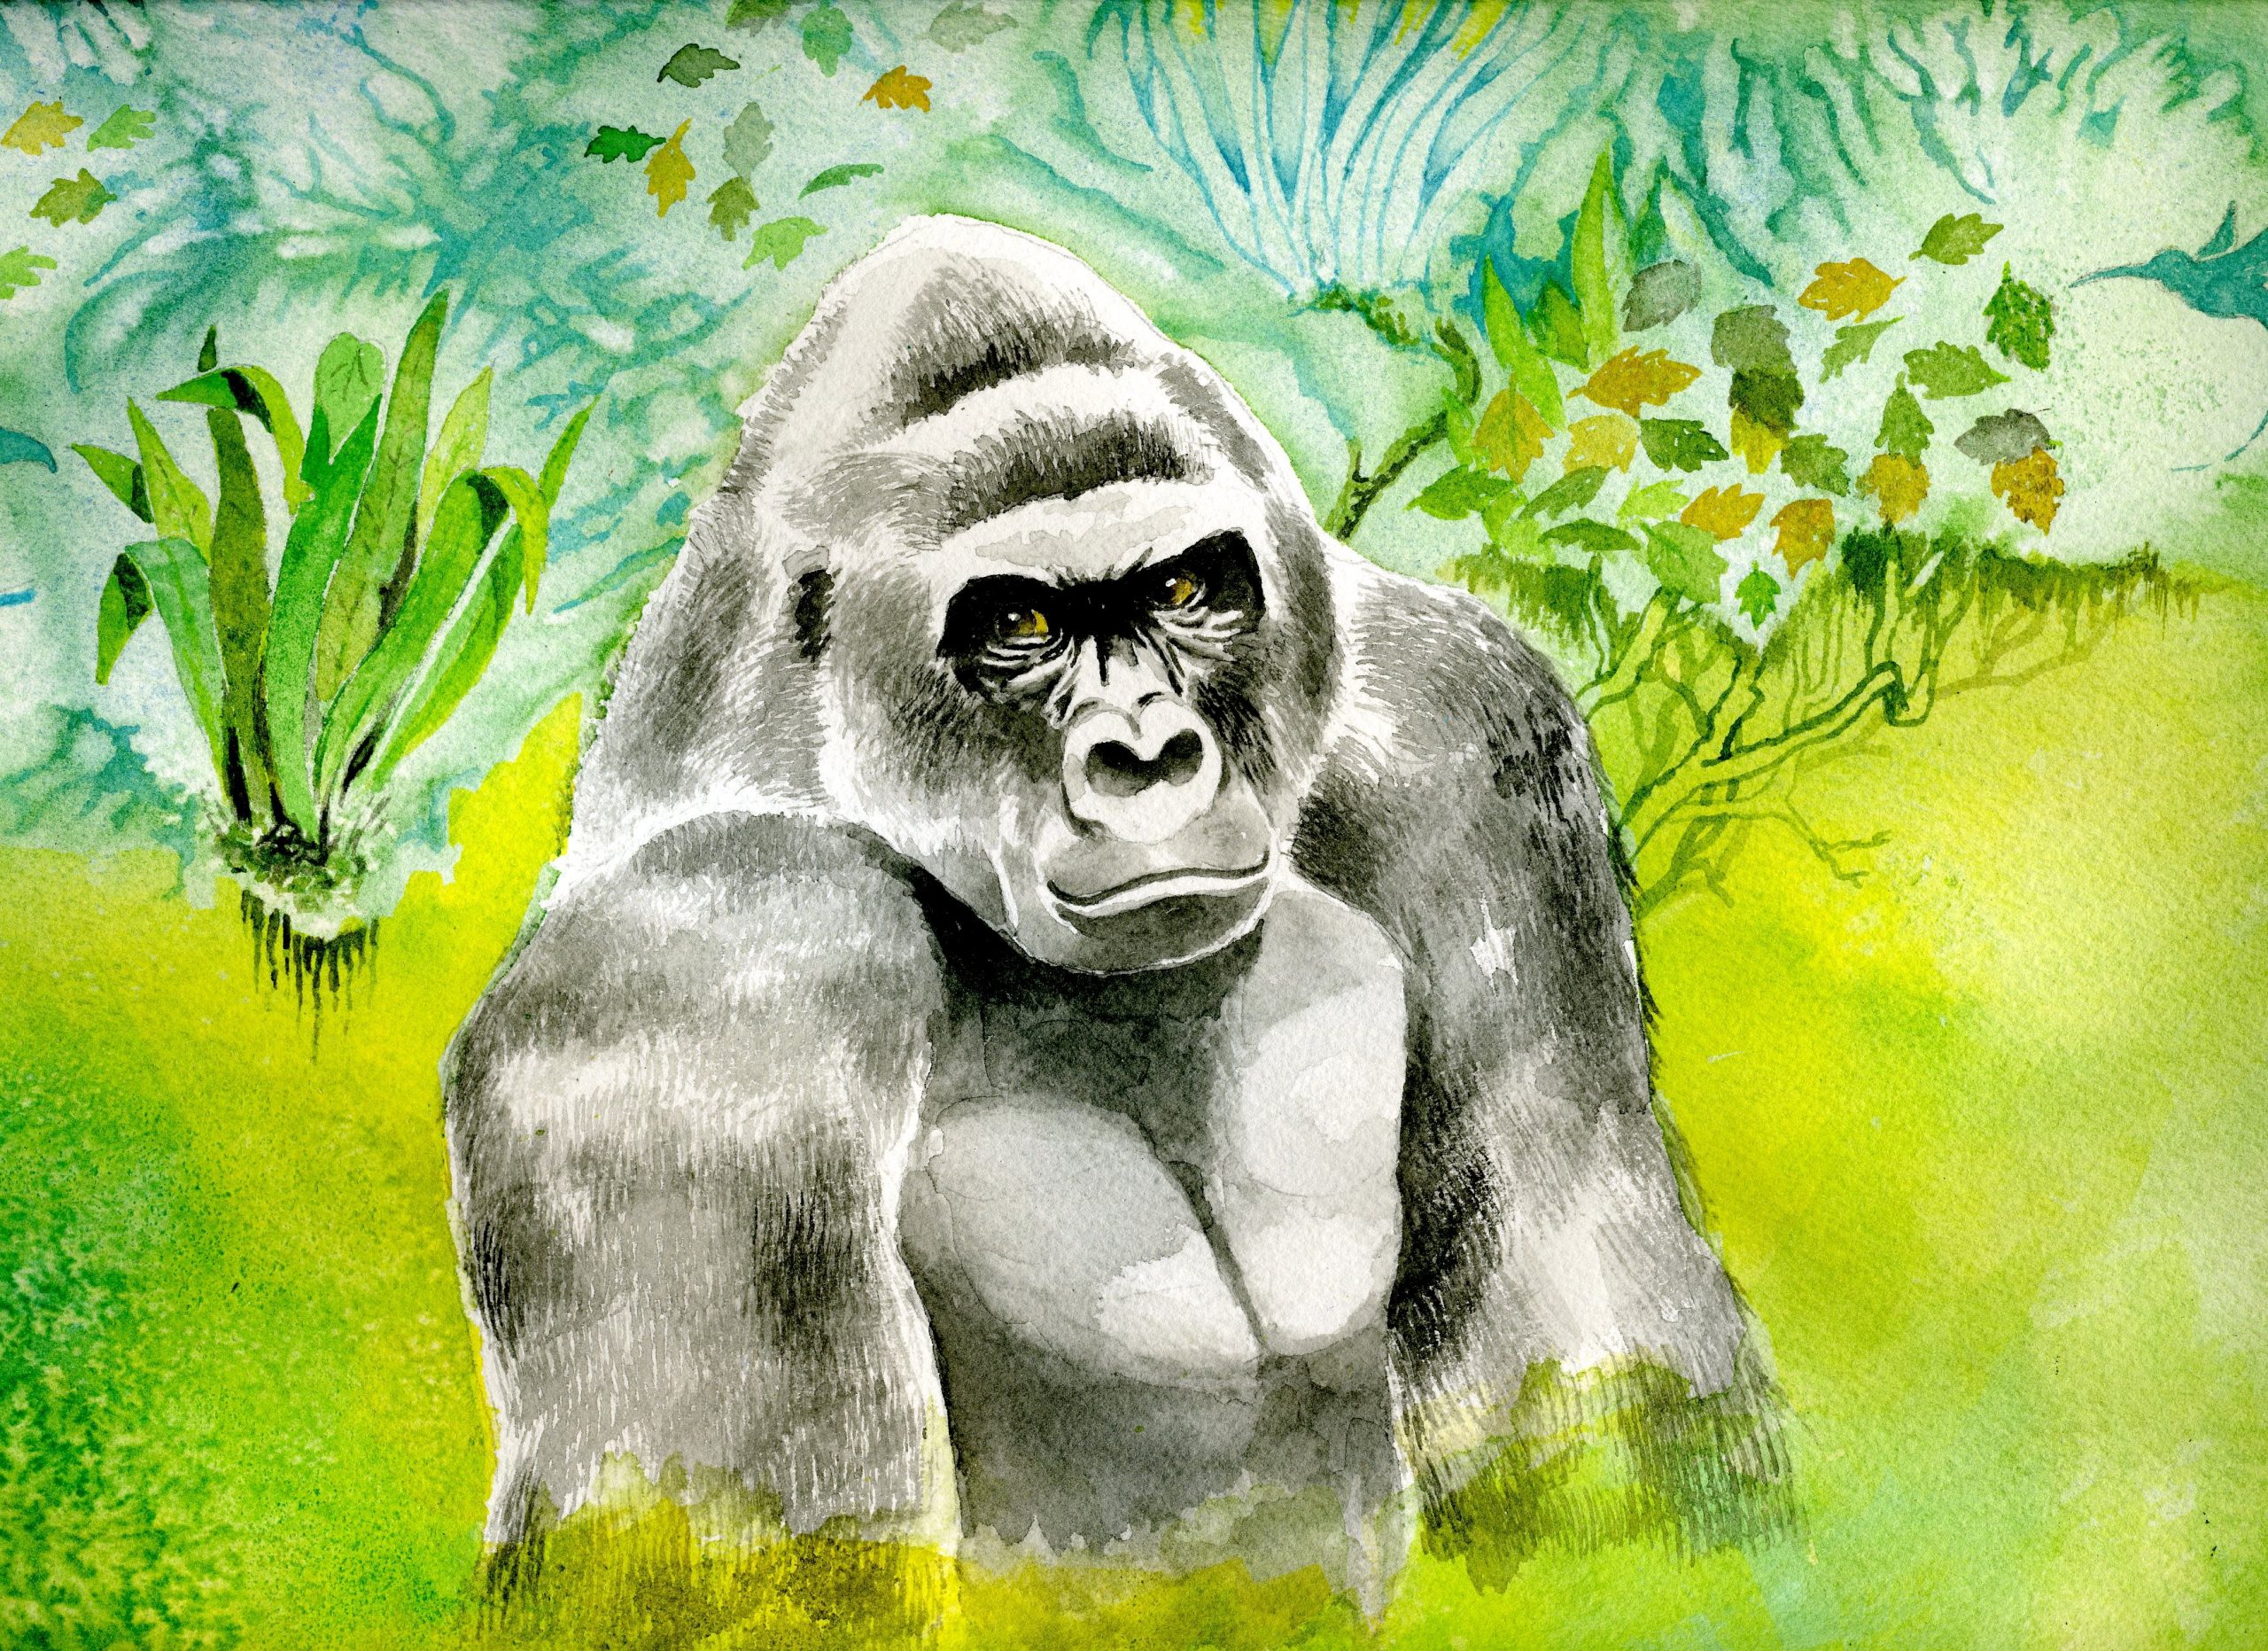 Gorilla in Forest 13 x 19